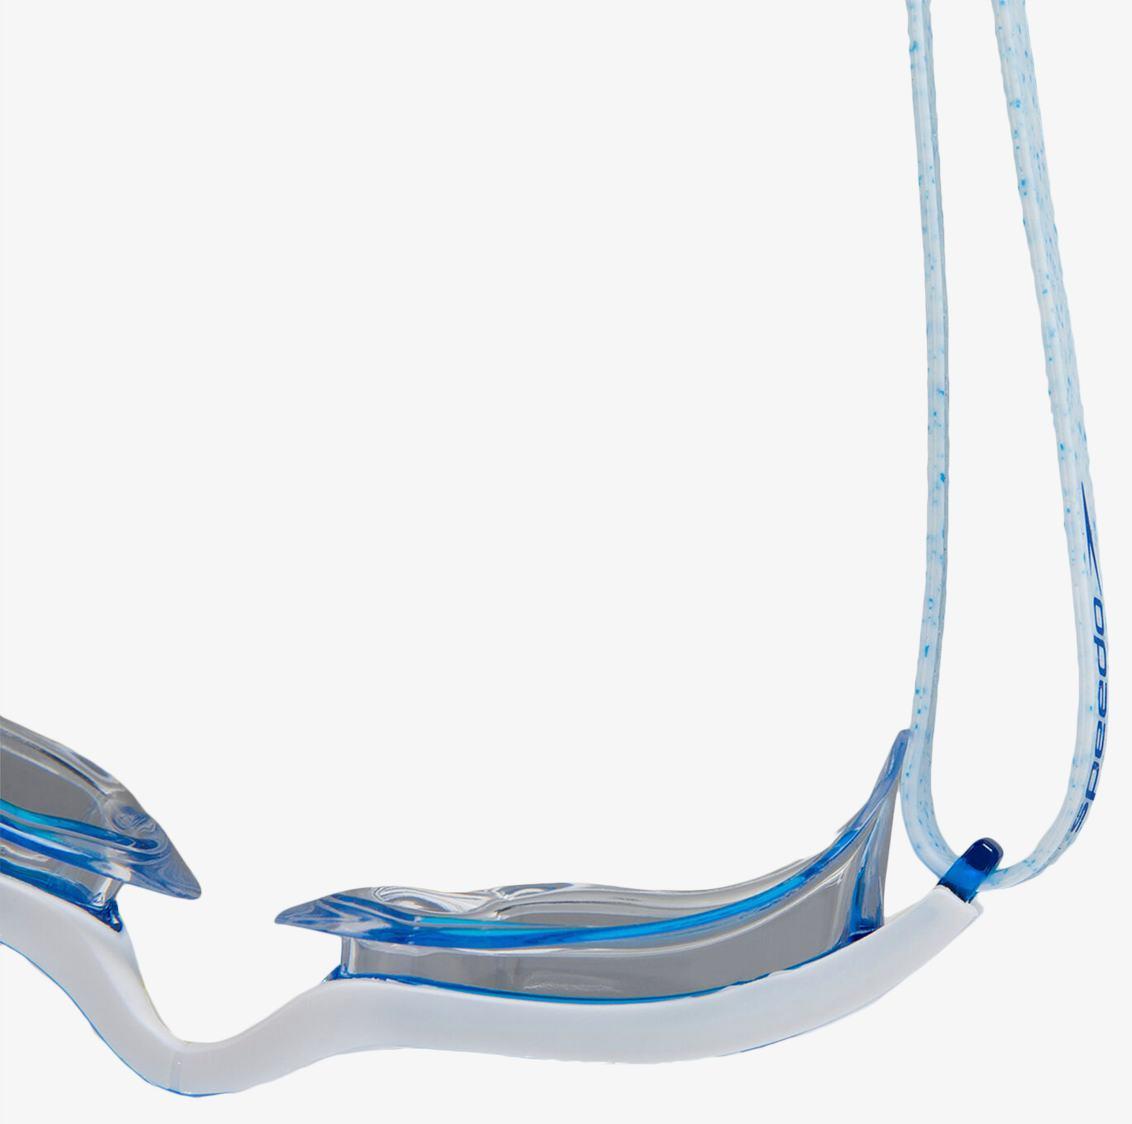 Очки для плавания Speedo Aquapulse Max 2 белый/голубой